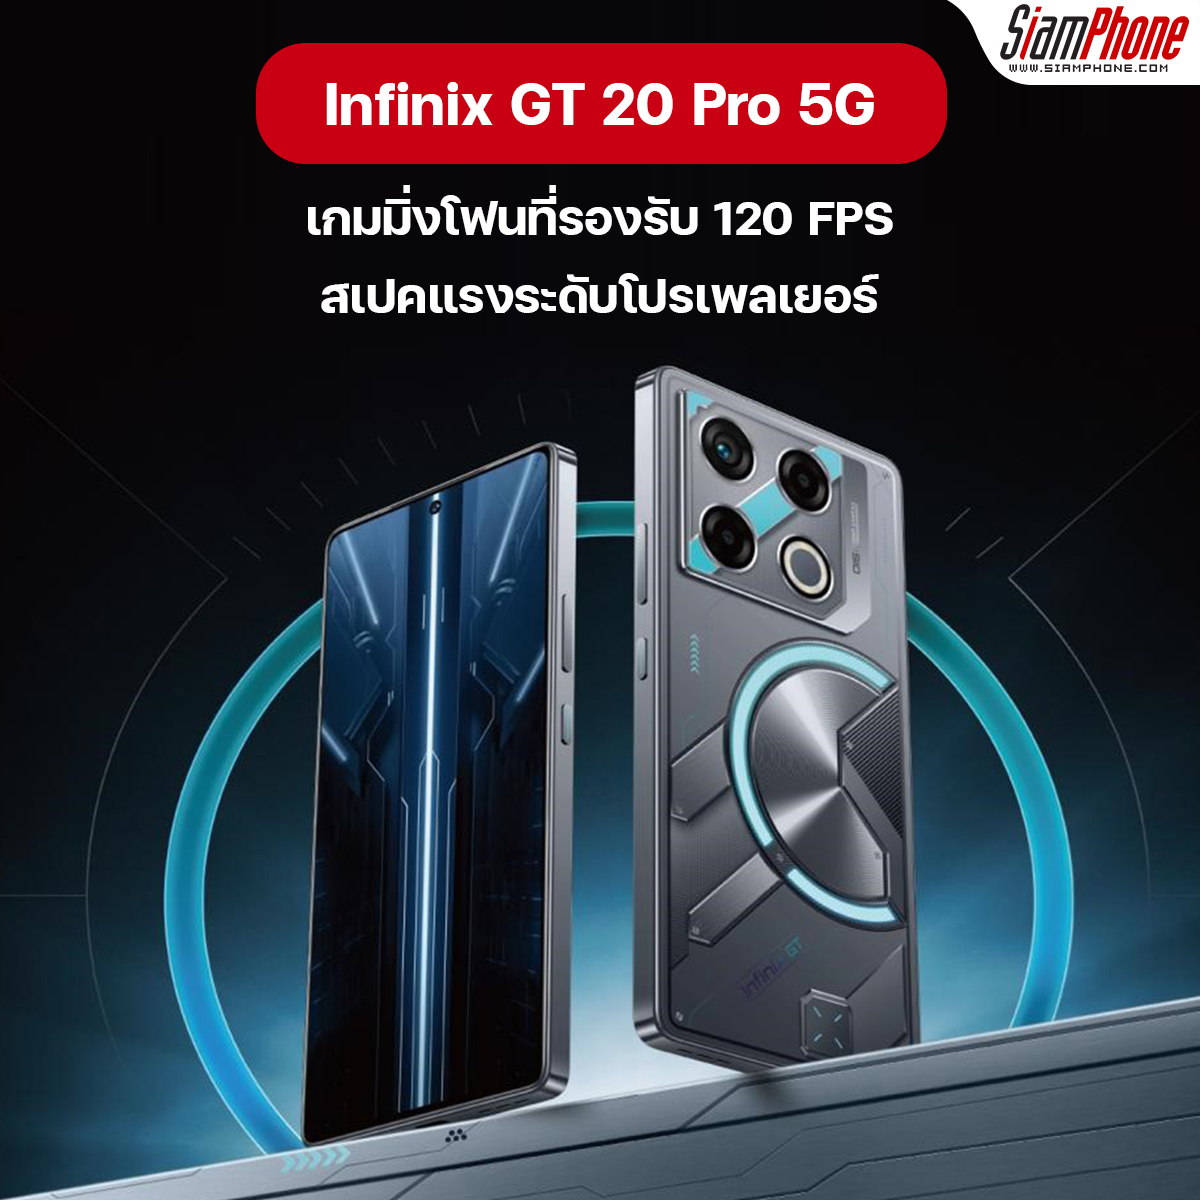 Infinix GT 20 Pro 5G เกมมิ่งโฟนที่รองรับ 120 FPS สเปคแรงระดับโปรเพลเยอร์